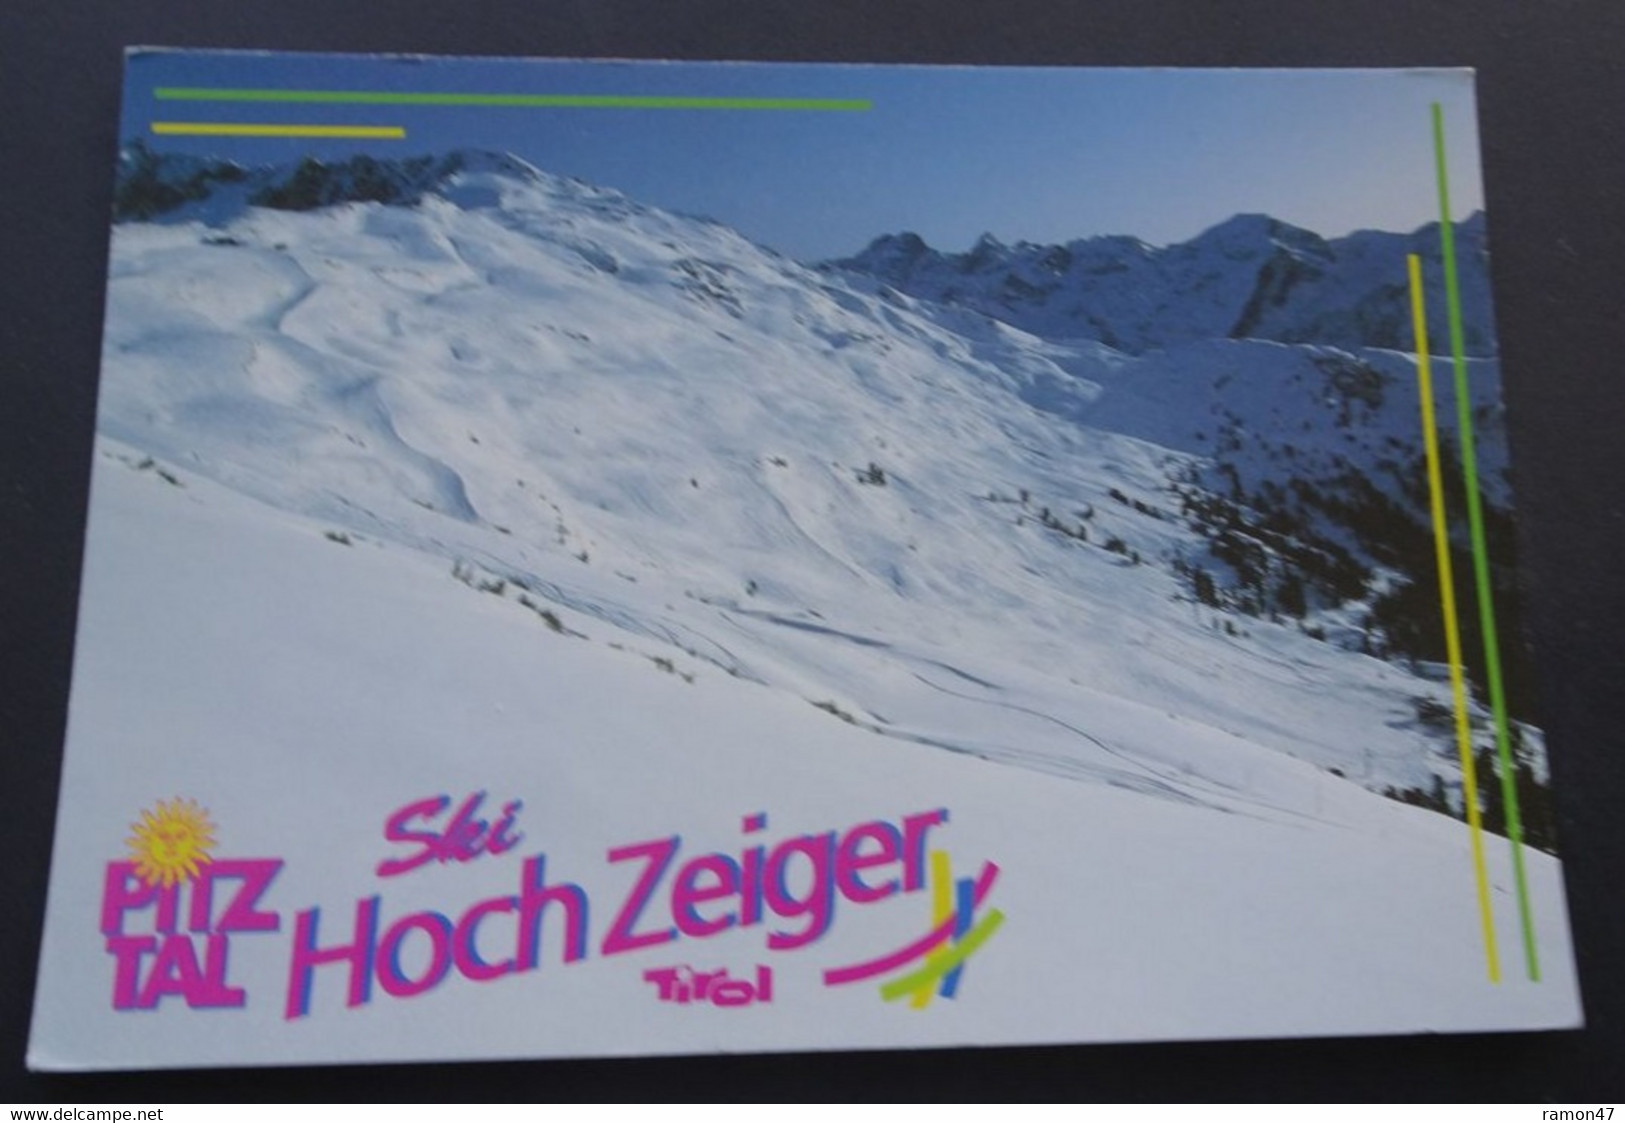 Ski Hochzeiger - Schigebiet Hochzeiger - Aufnahme Und Verlag Foto Isidor Nösig, Sölden - # 0/303 - Pitztal